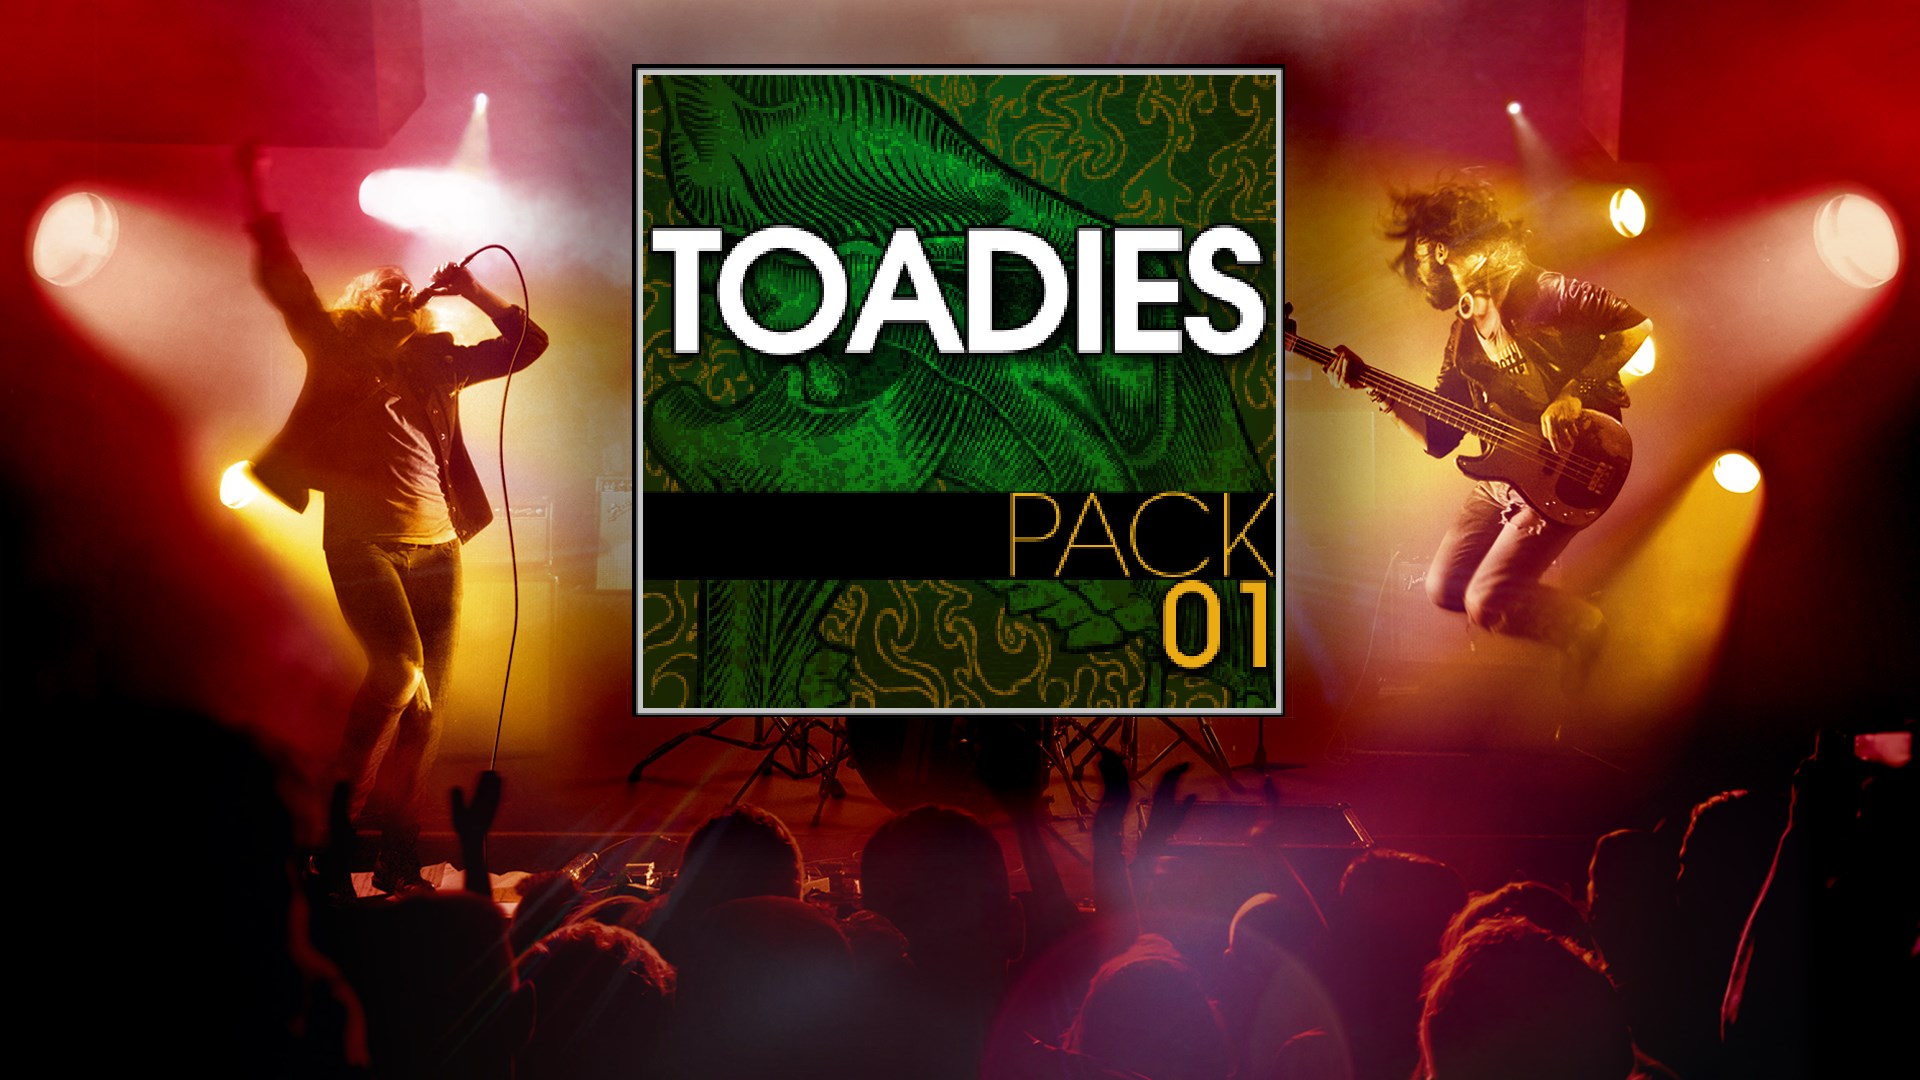 Buy Toadies Pack Microsoft Store